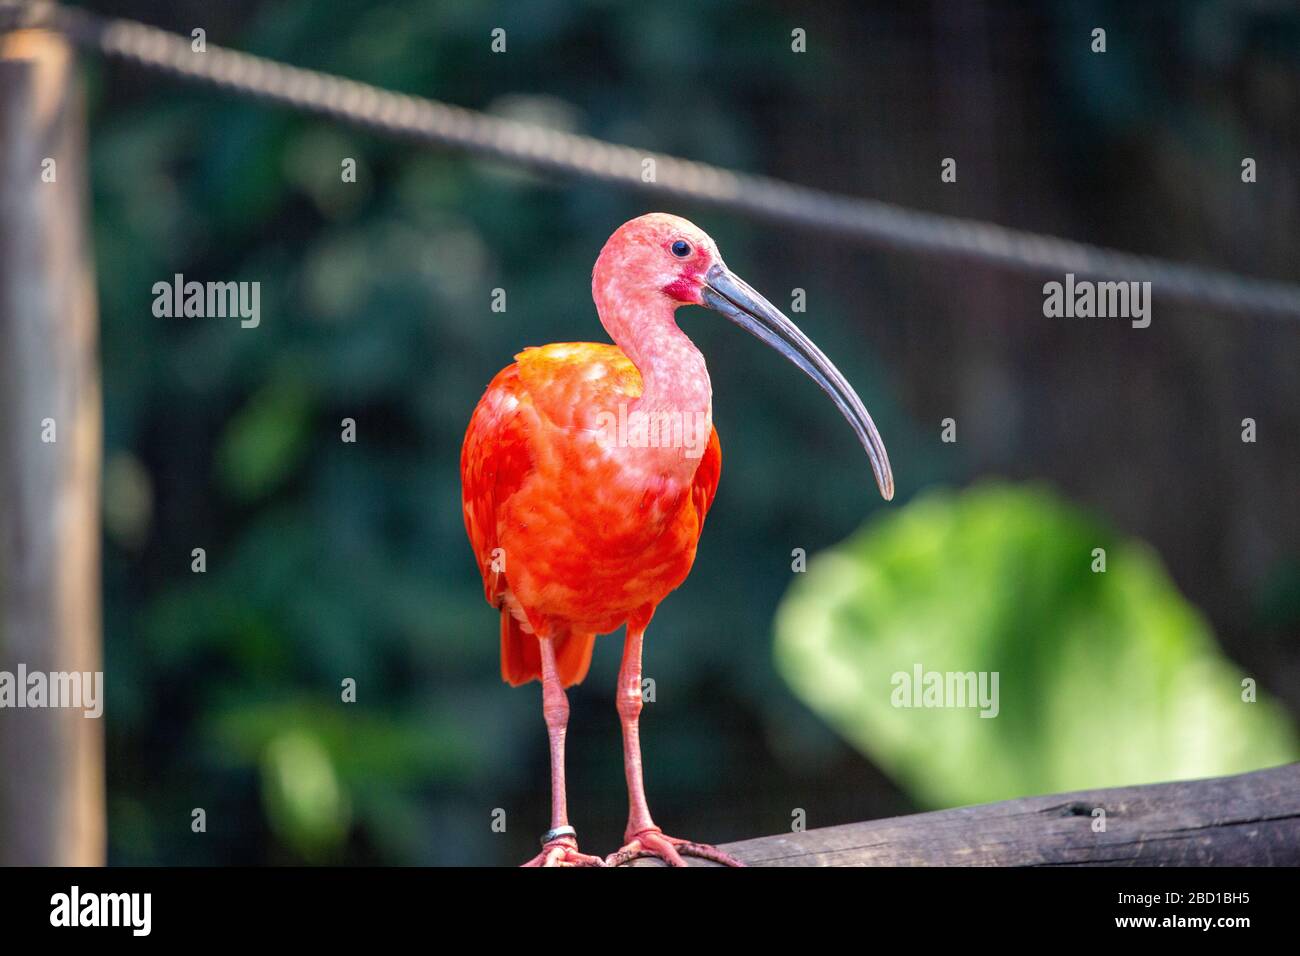 Scarlet Ibis Stock Photo